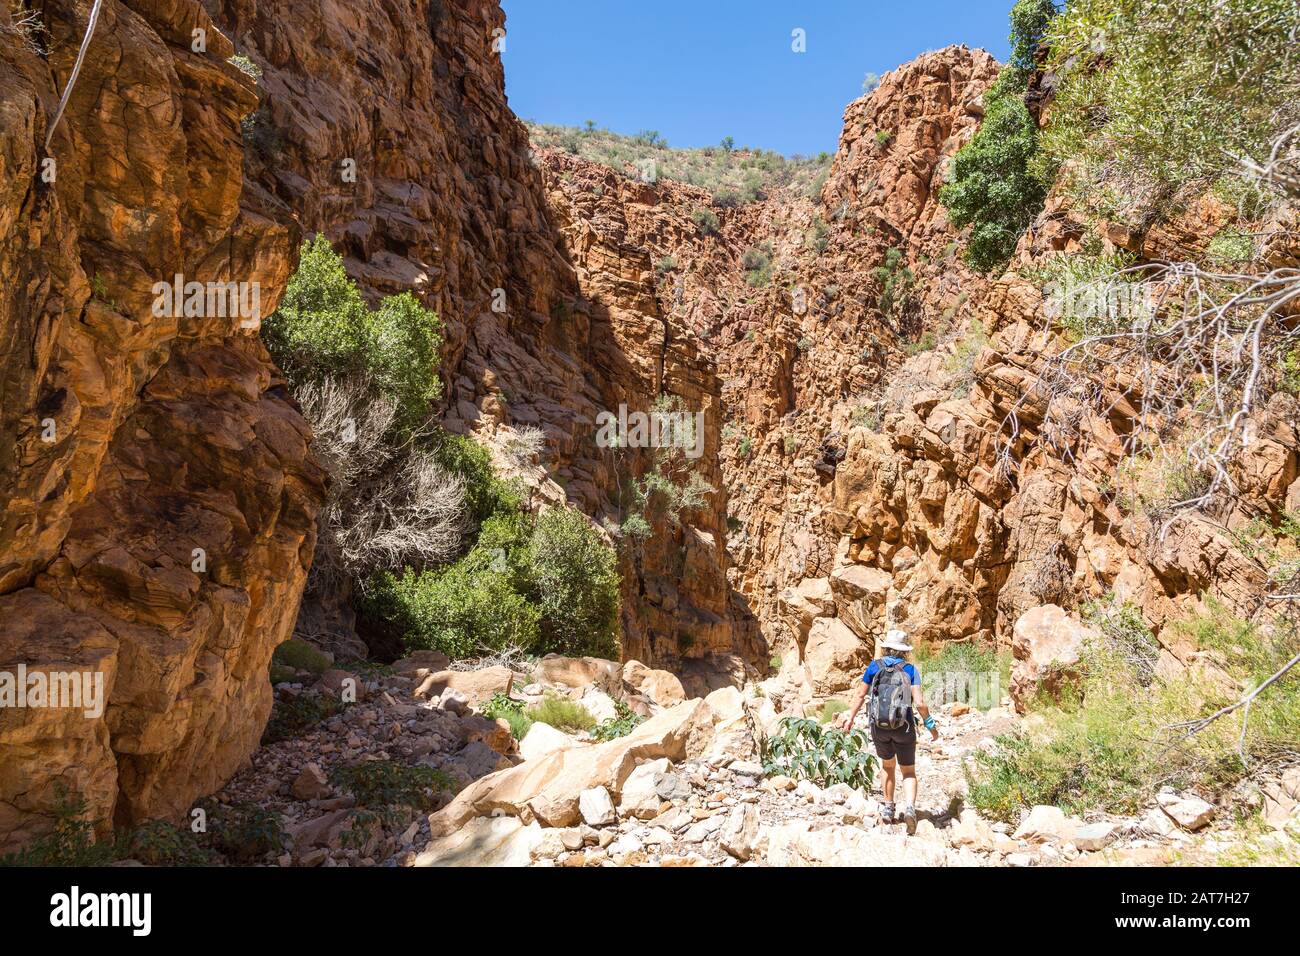 Une jeune femme qui a fait de la randonnée sur l'Olive Trail dans le parc Namib Naukluft, en marchant dans un canyon avec de grandes roches érodées, Namibie, Afrique Banque D'Images